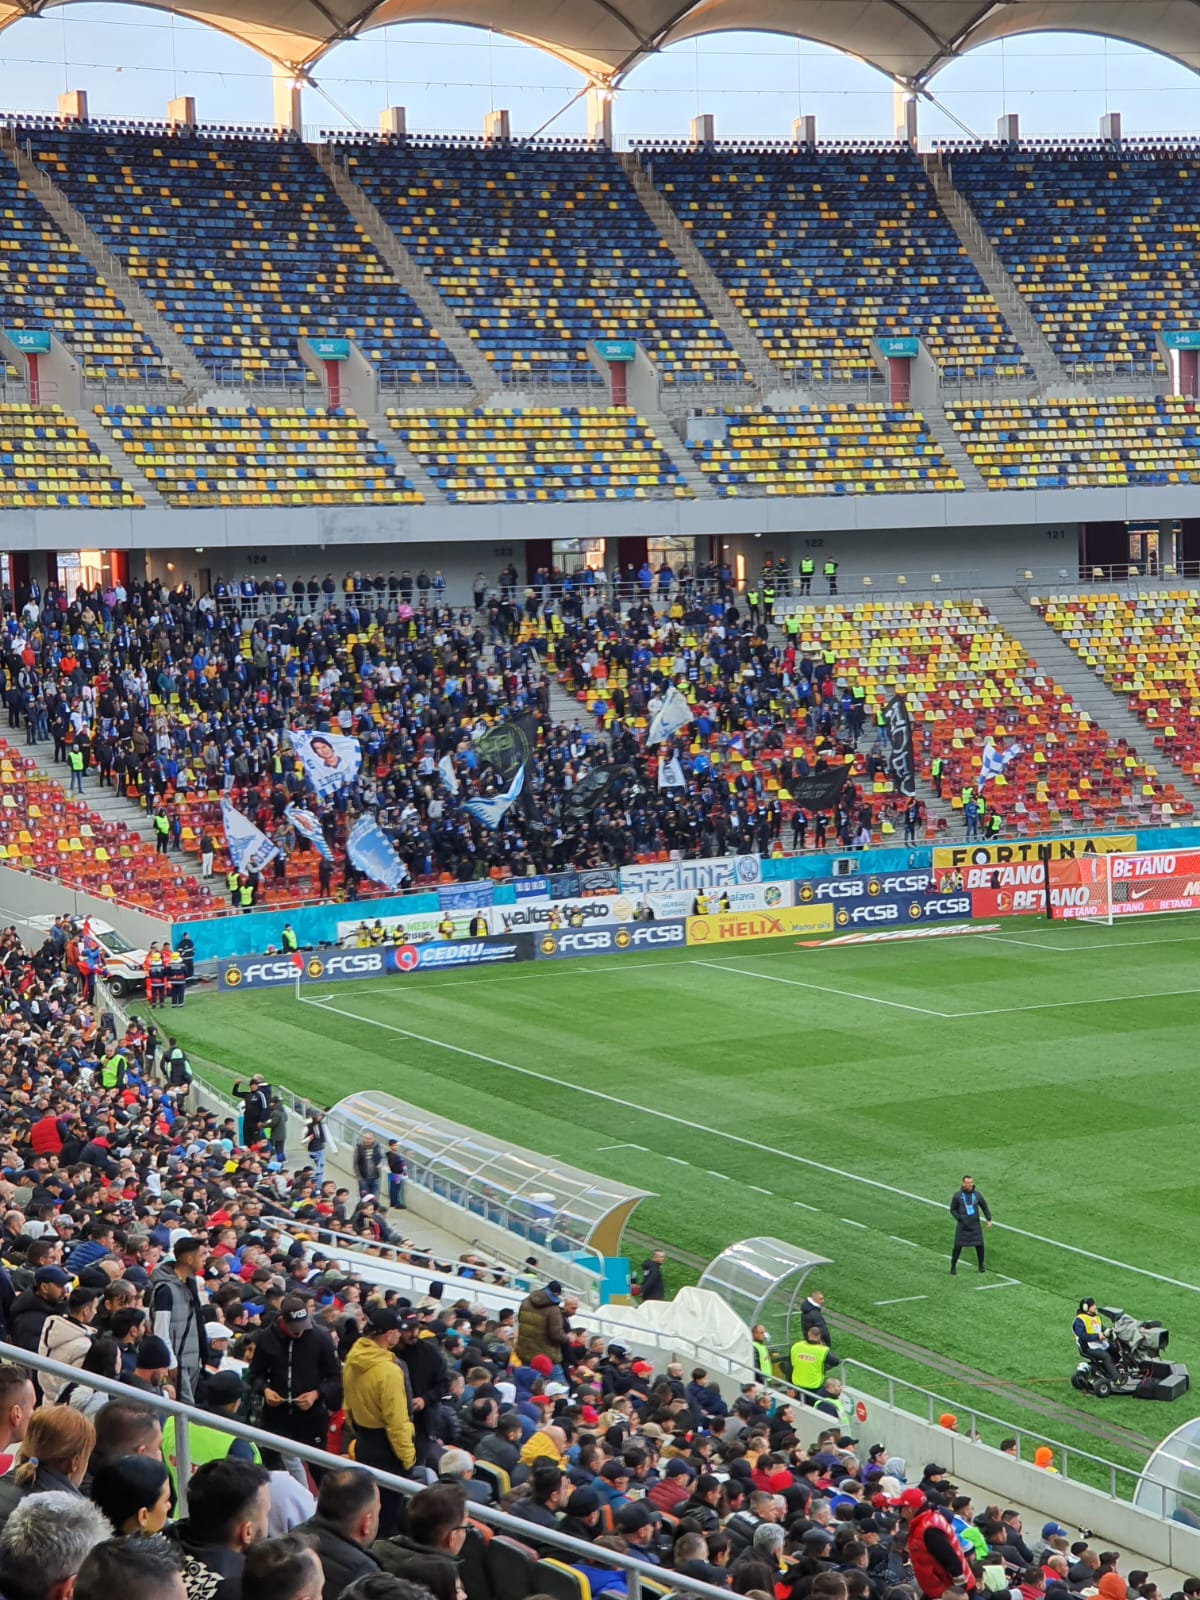 FCSB - Universitatea Craiova. Derby pe Arena Națională